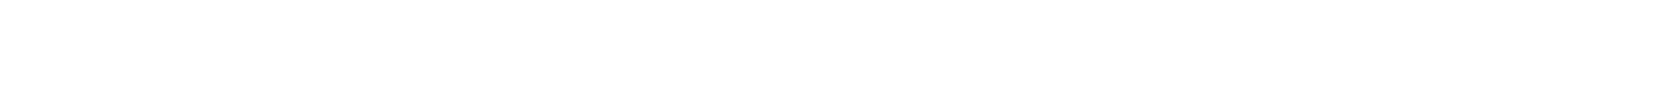 LOUIS VUITTON DOBERMAN Logo